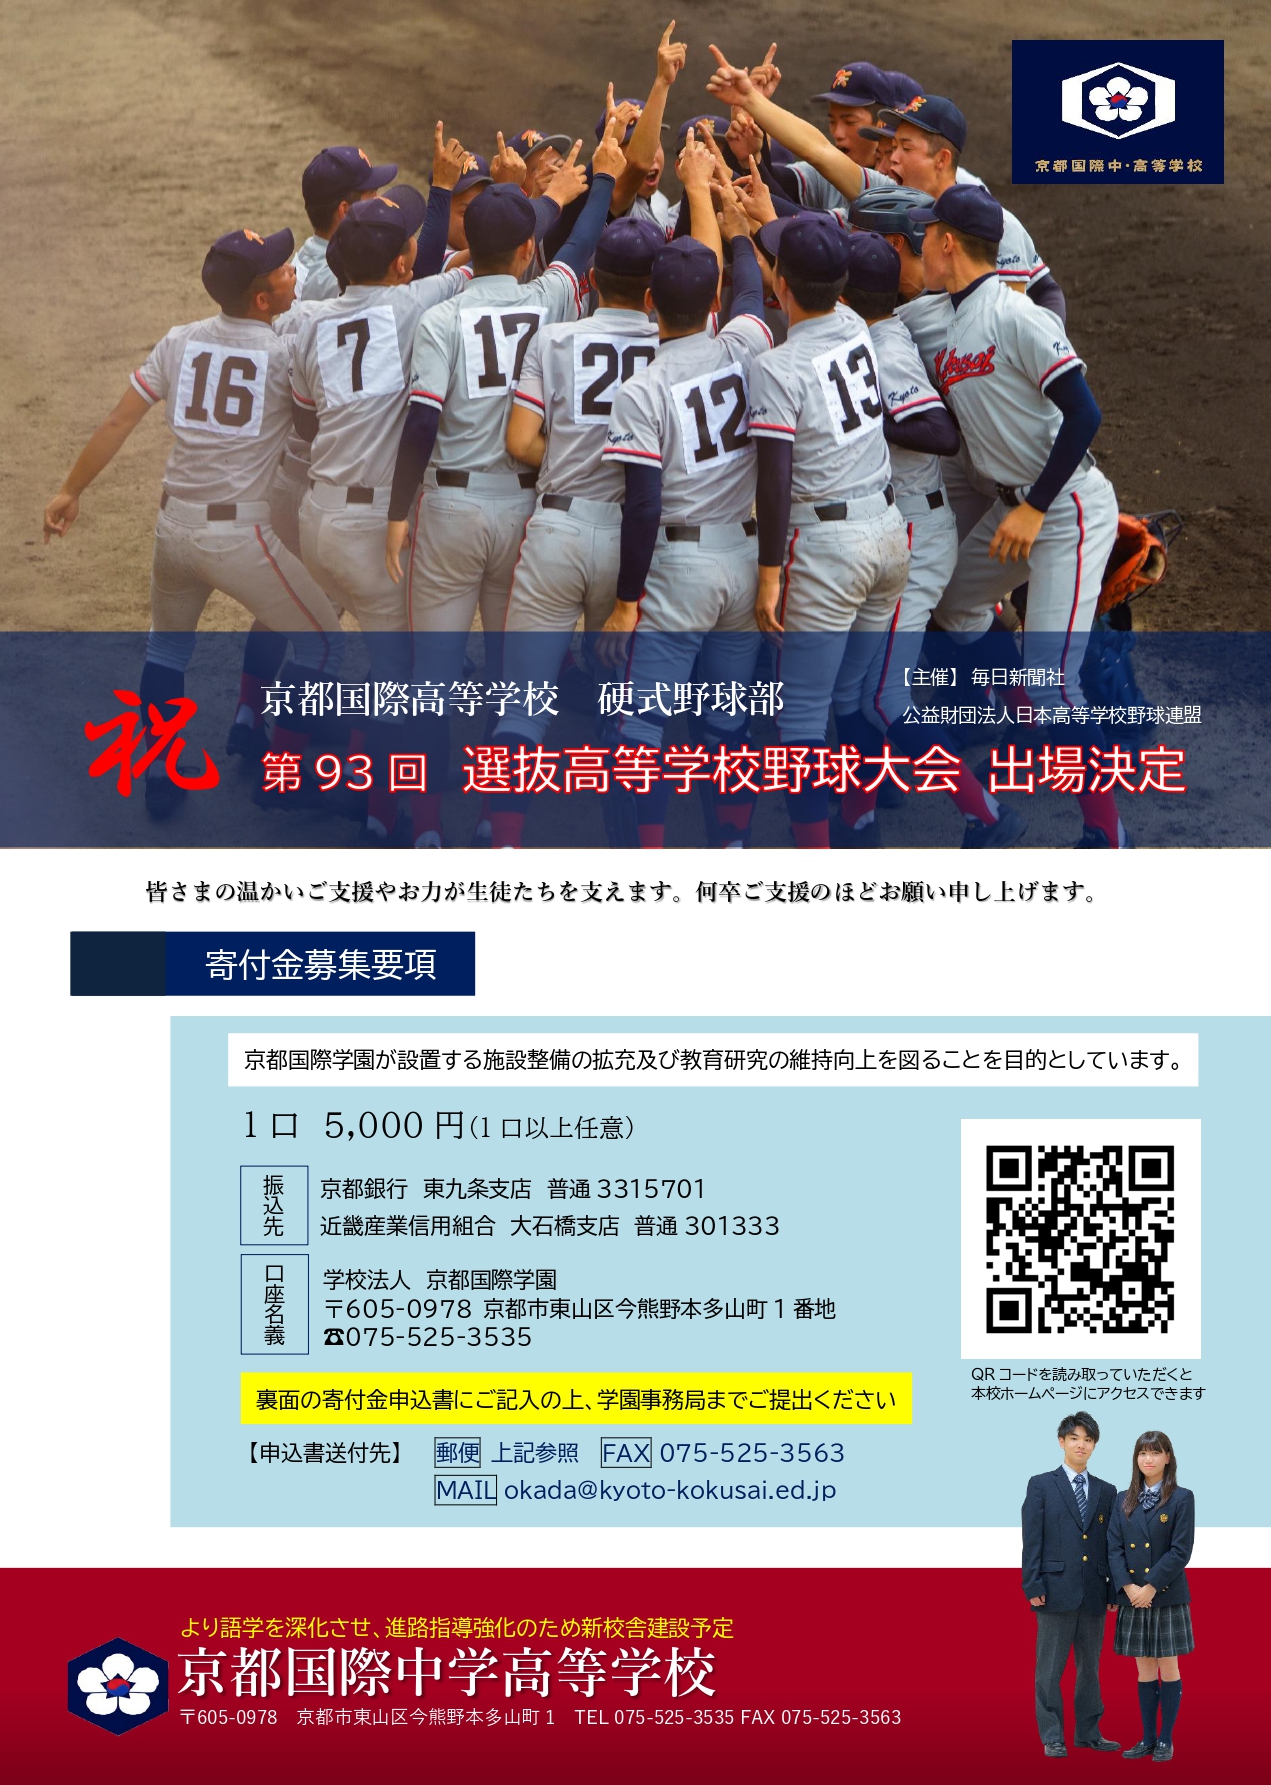 お知らせ 速報 硬式野球部 第93回選抜高校野球大会出場が決定しました 学校法人 京都国際学園